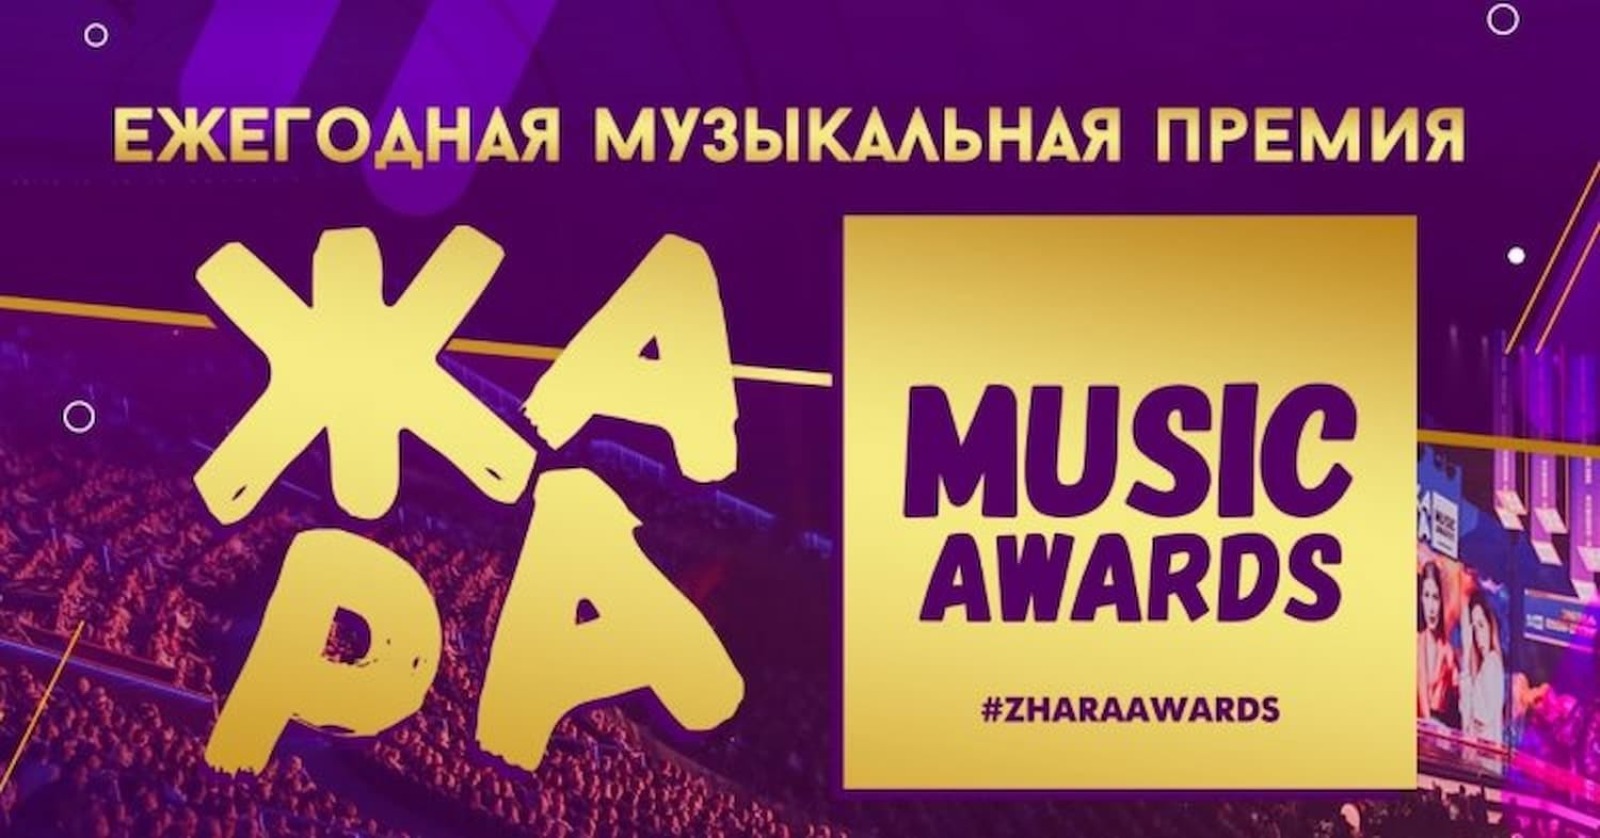 Муз тв премия билеты концерт. Жара Music Awards 2022. Жара Music Awards 2021. Концерт жара в Москве 2021. Жара концерт 2022 Москва.